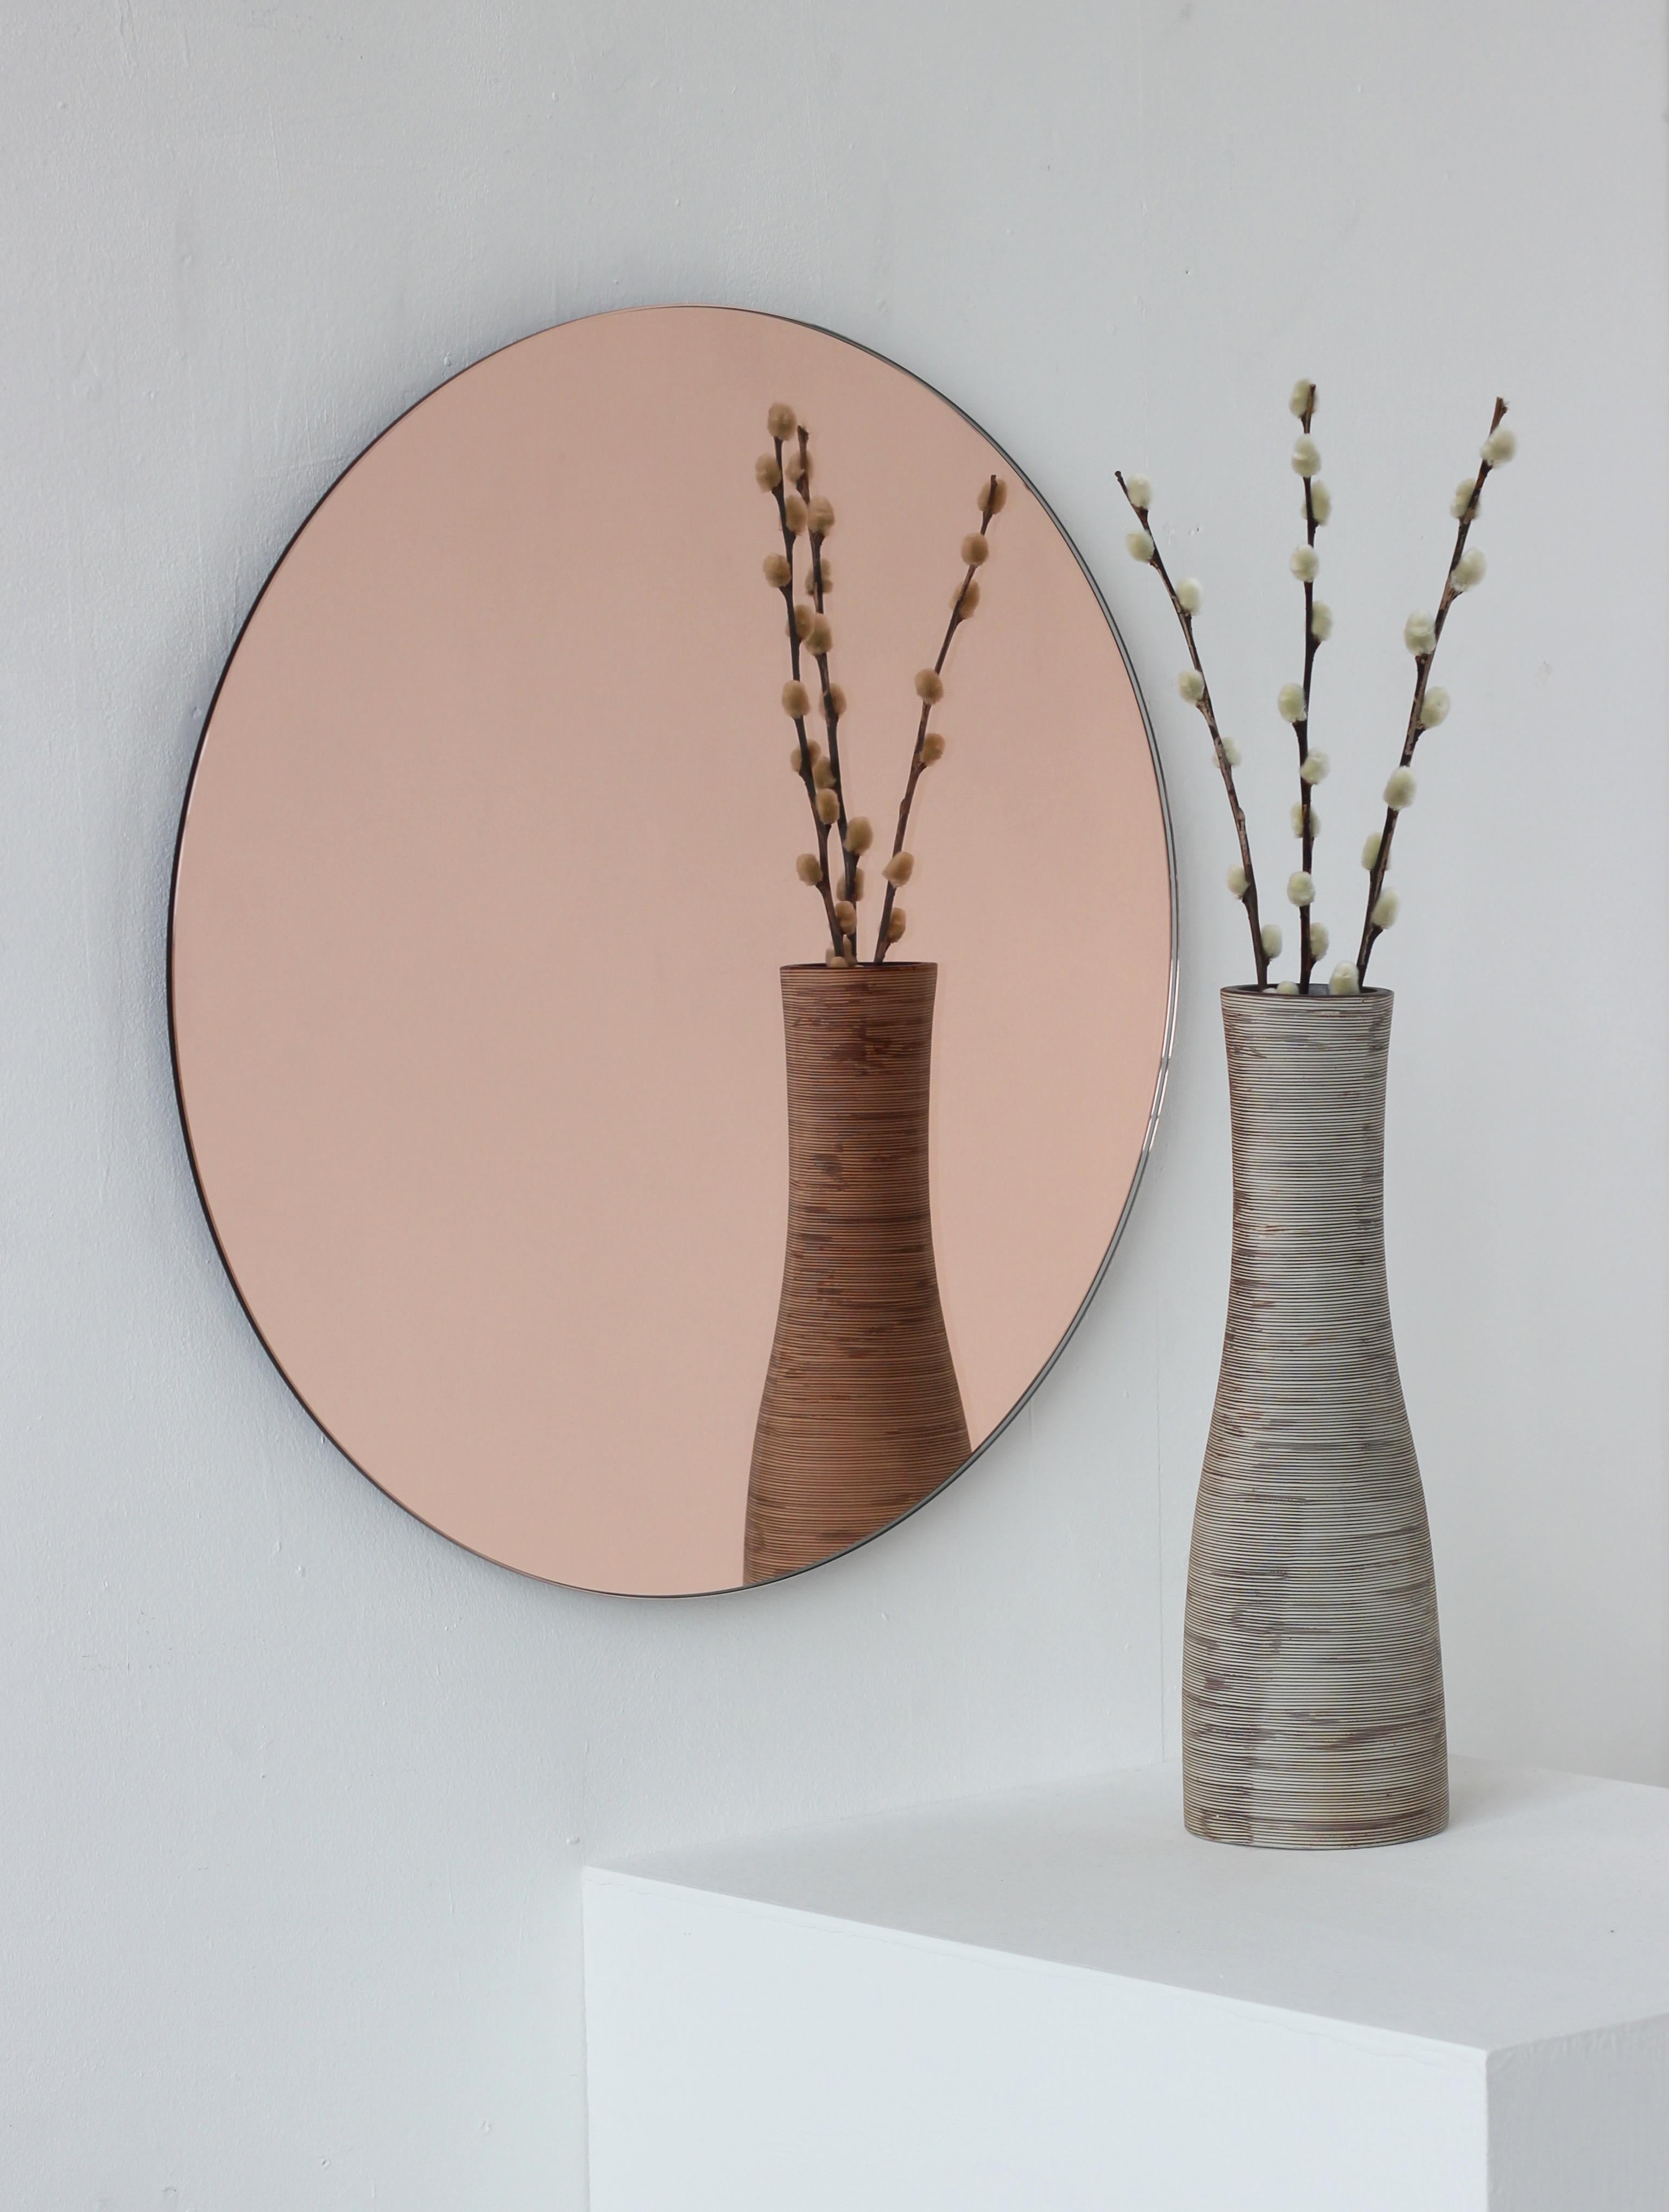 Charmanter und minimalistischer runder rahmenloser Orbis™-Spiegel in Roségold/Pfirsich mit Schwebeeffekt. Hochwertiges Design, das dafür sorgt, dass der Spiegel perfekt parallel zur Wand steht. Entworfen und hergestellt in London, UK.

Ausgestattet